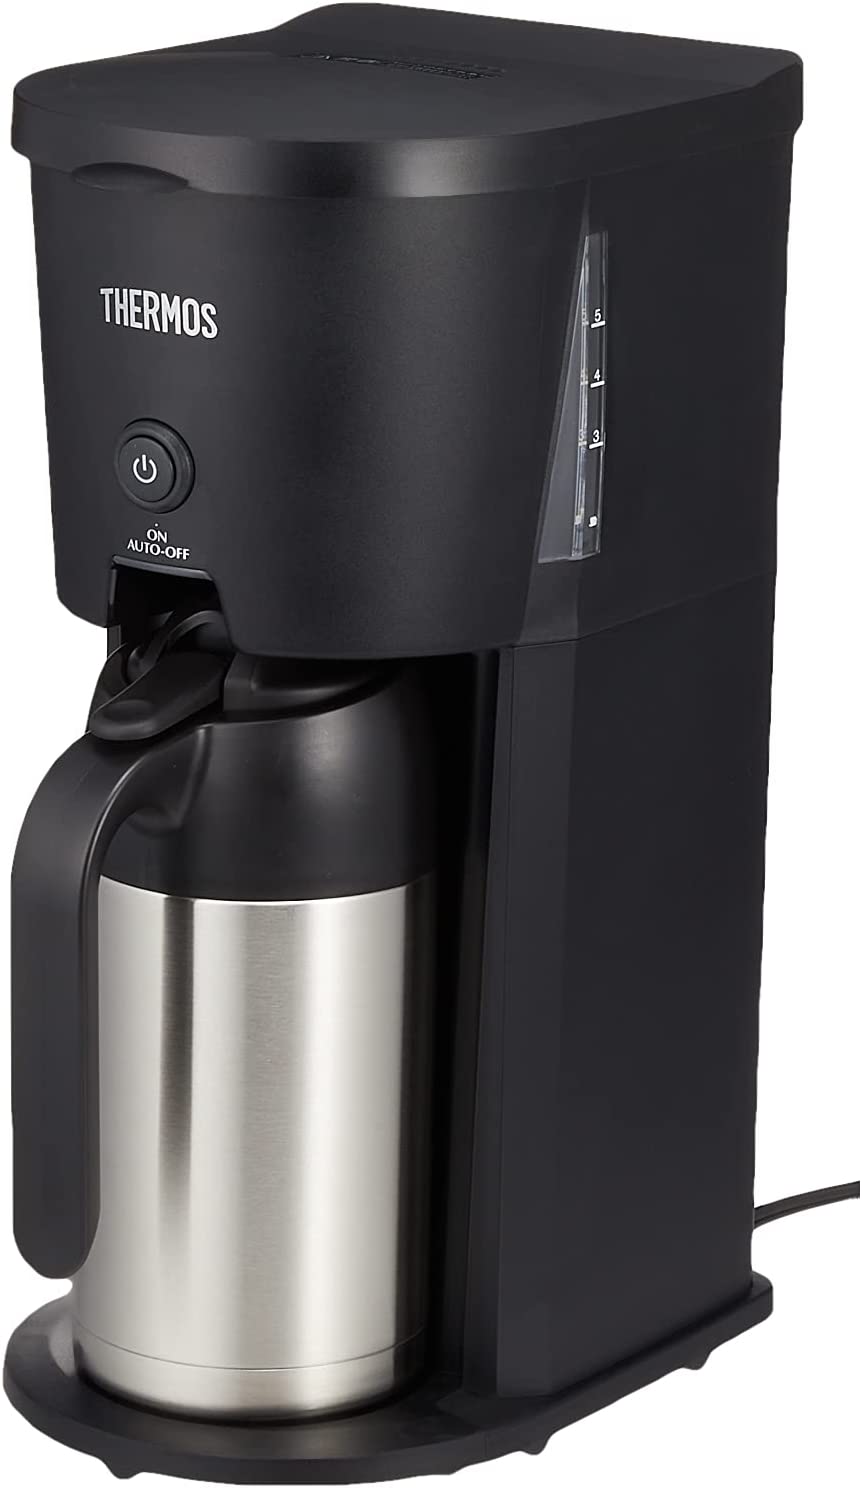 サーモス/真空断熱ポットコーヒーメーカー ECJ-700